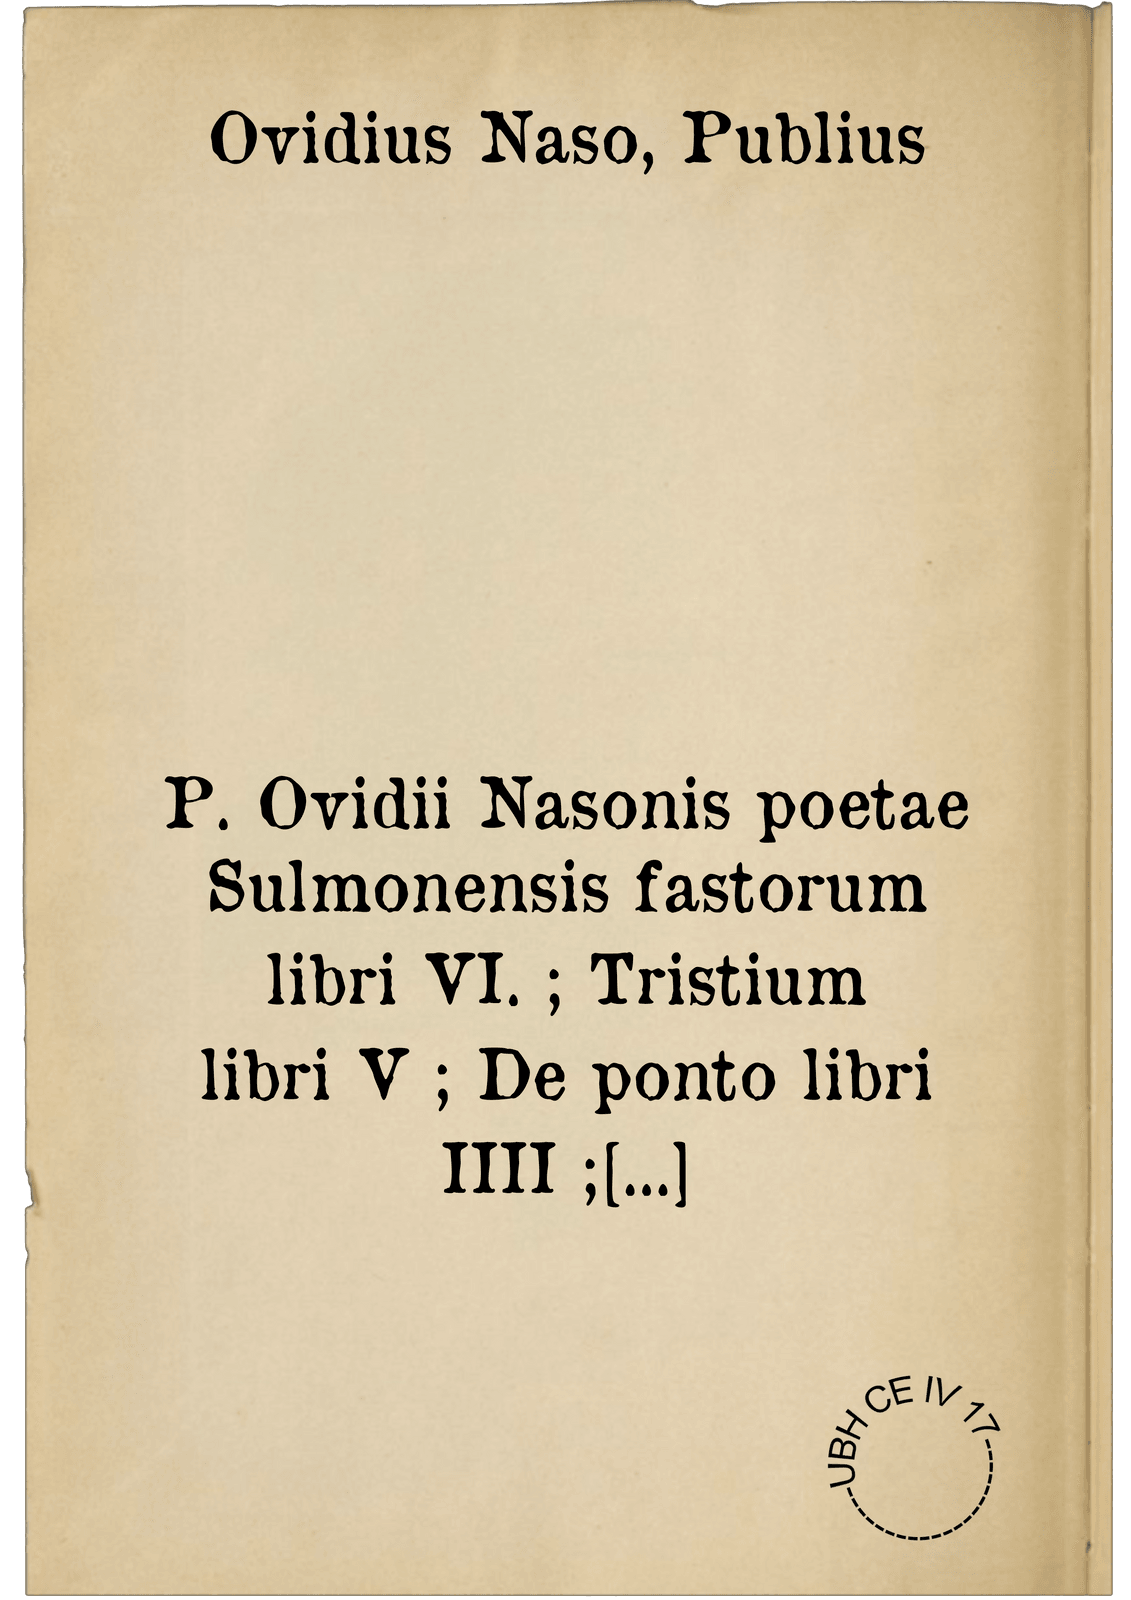 P. Ovidii Nasonis poetae Sulmonensis fastorum libri VI. ; Tristium libri V ; De ponto libri IIII ; In Ibin